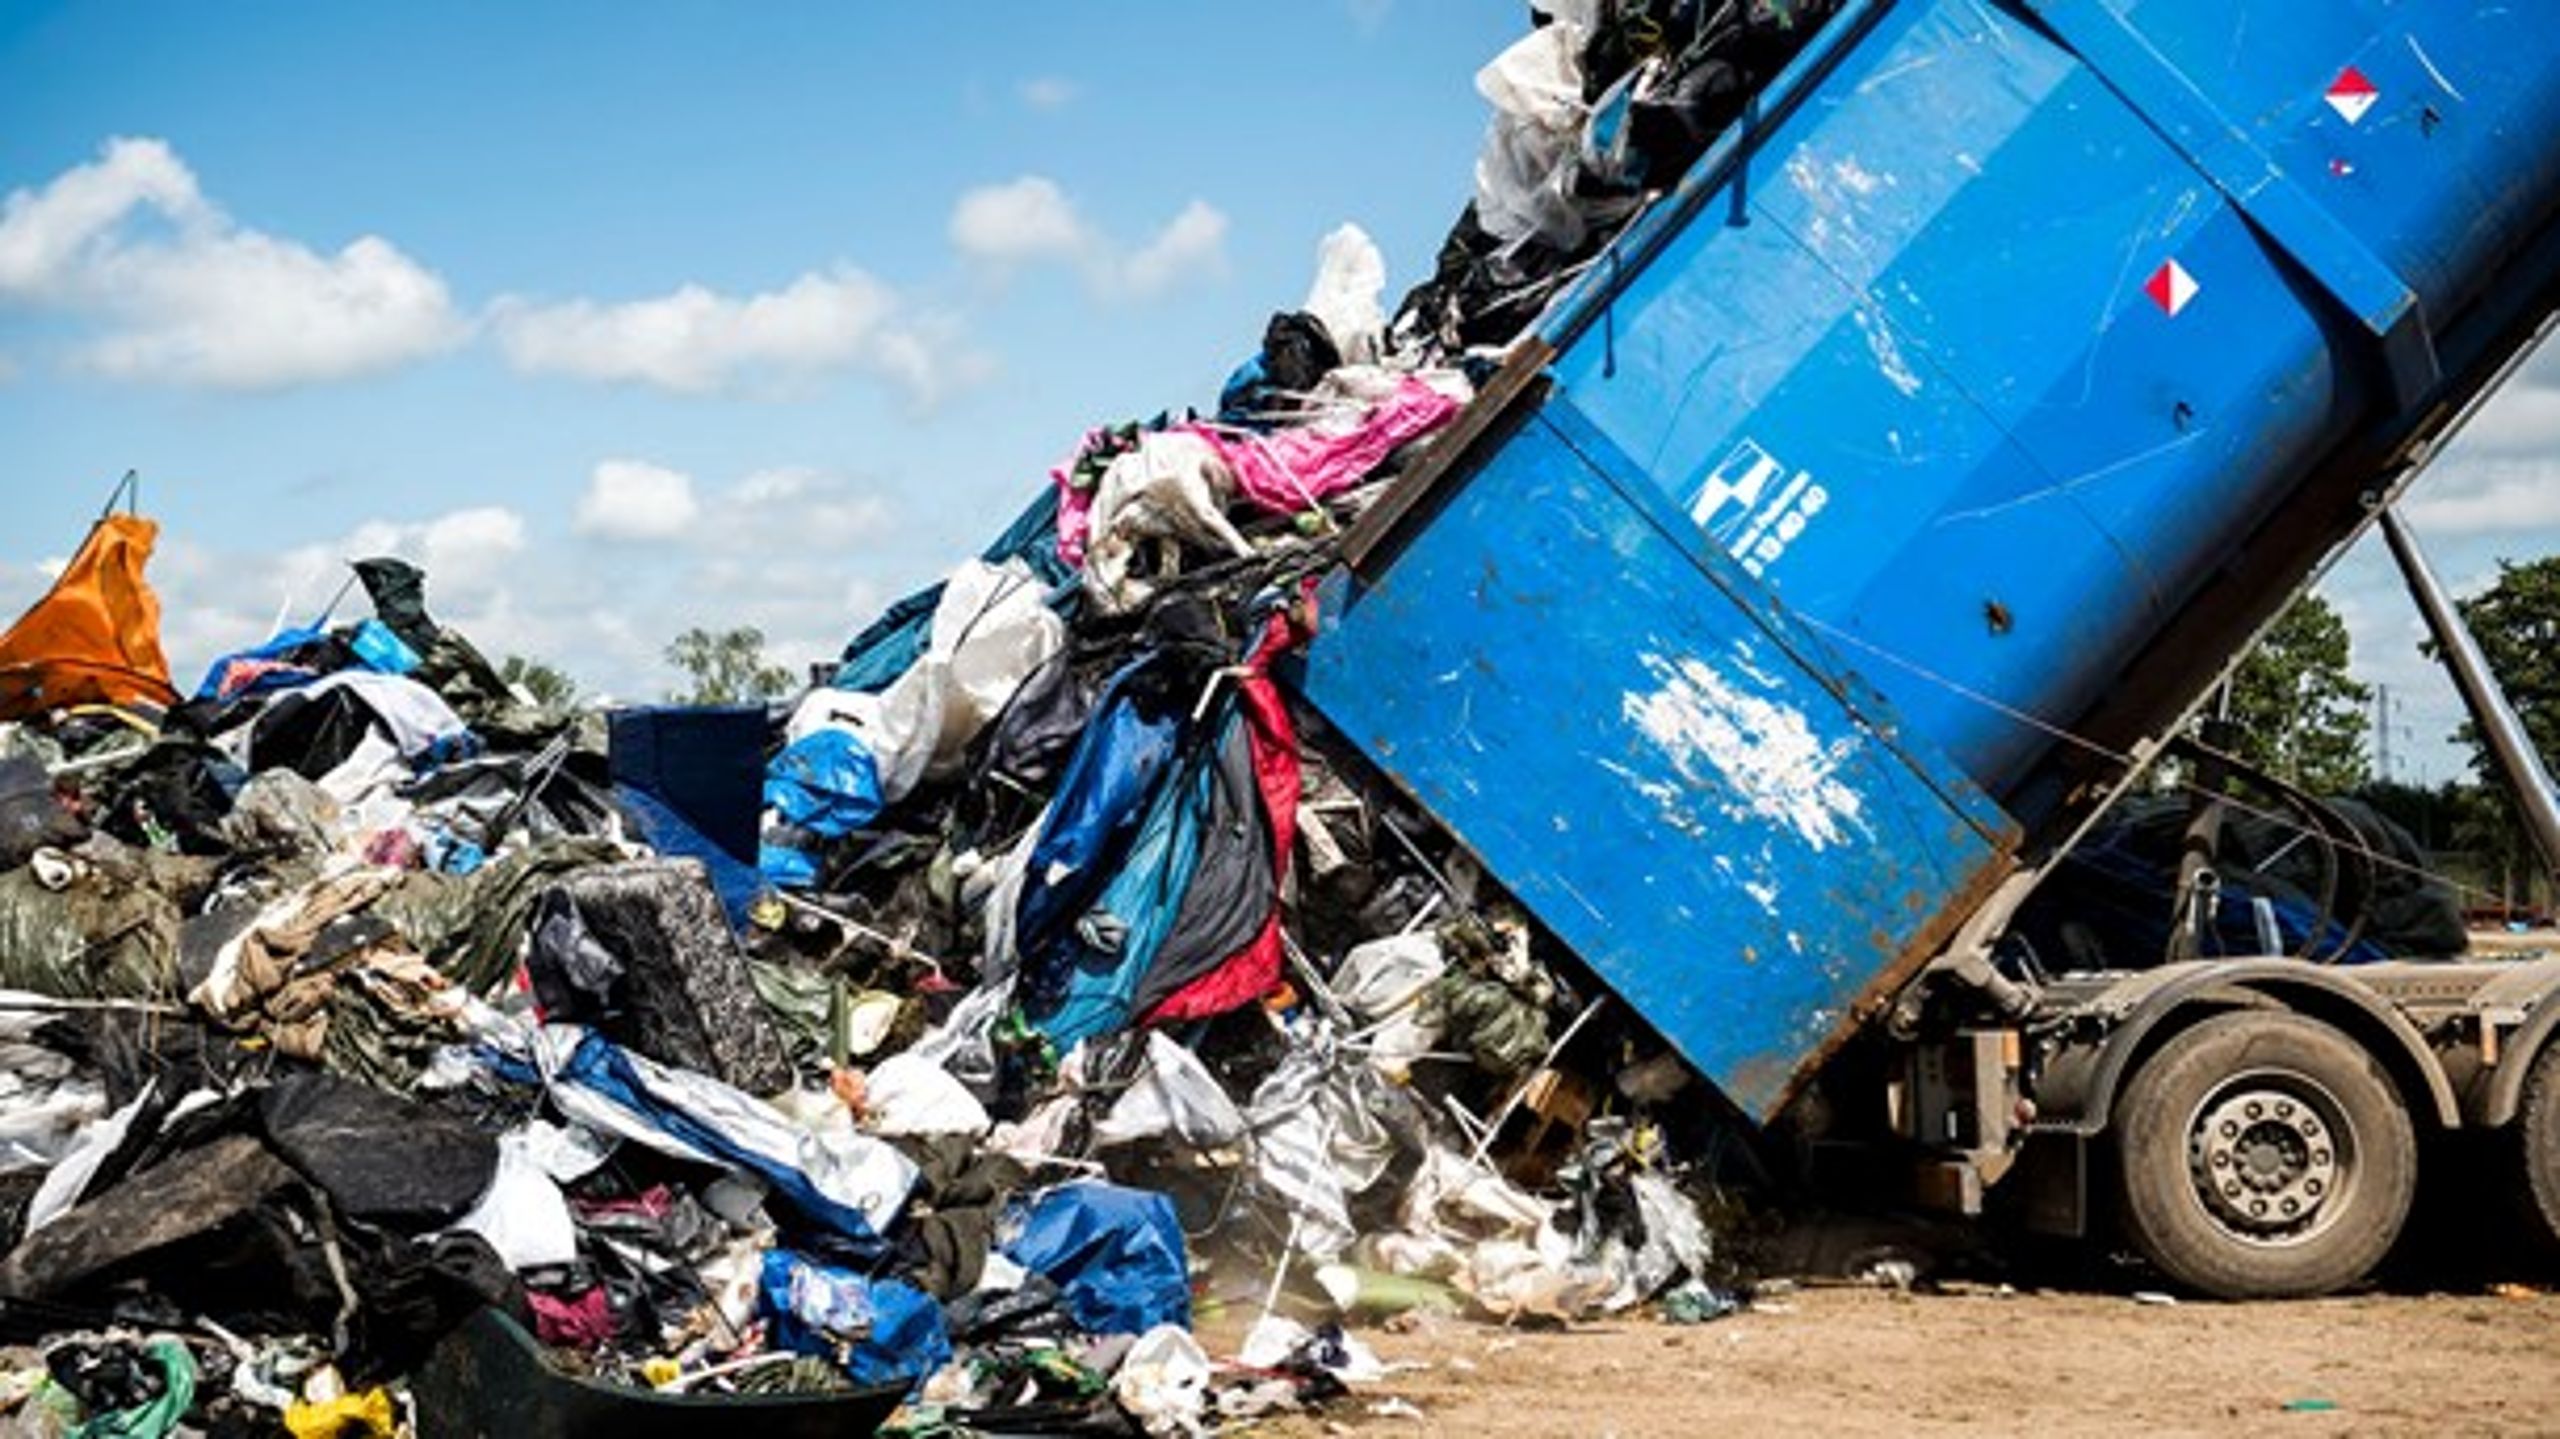 Regeringen lægger op til at standardisere indsamlingsordninger
og sorteringskriterier for plastikaffald fra husholdninger i hele landet.